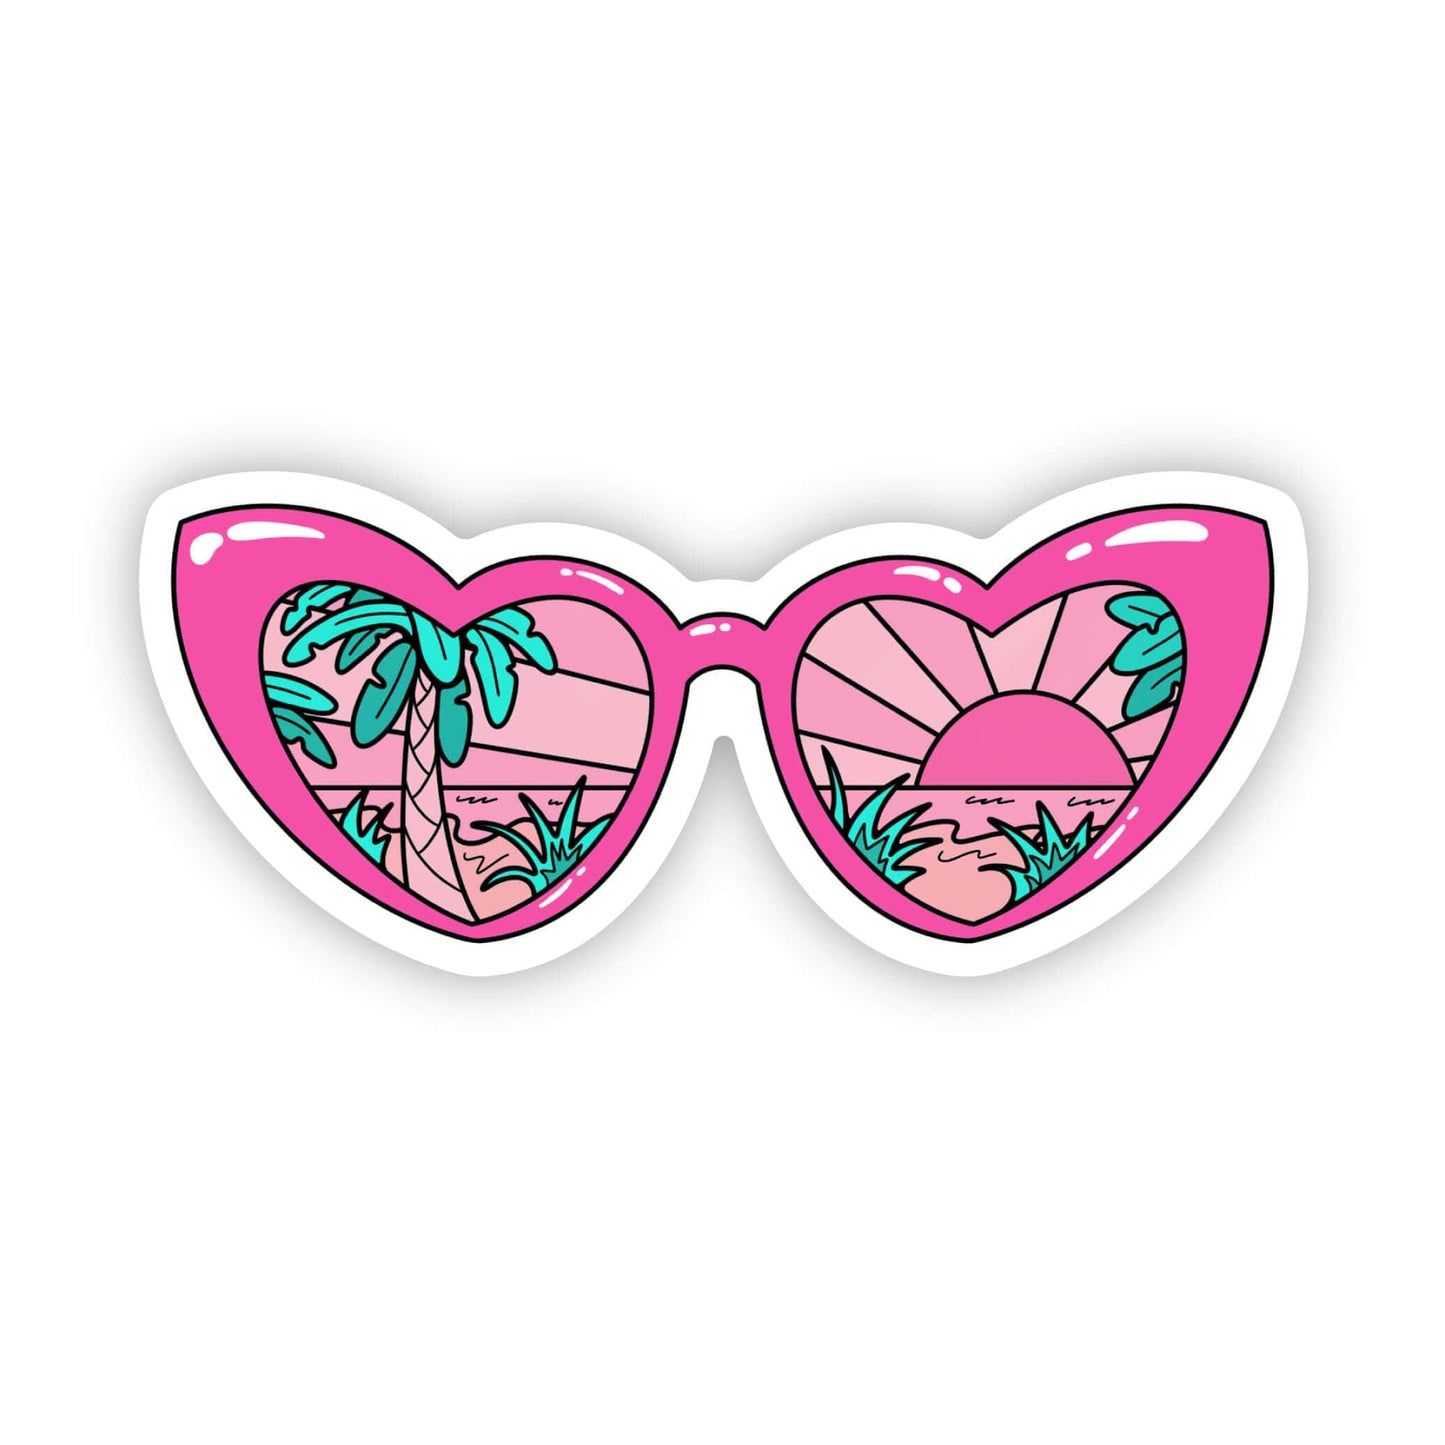 Heart sunglasses pink sticker